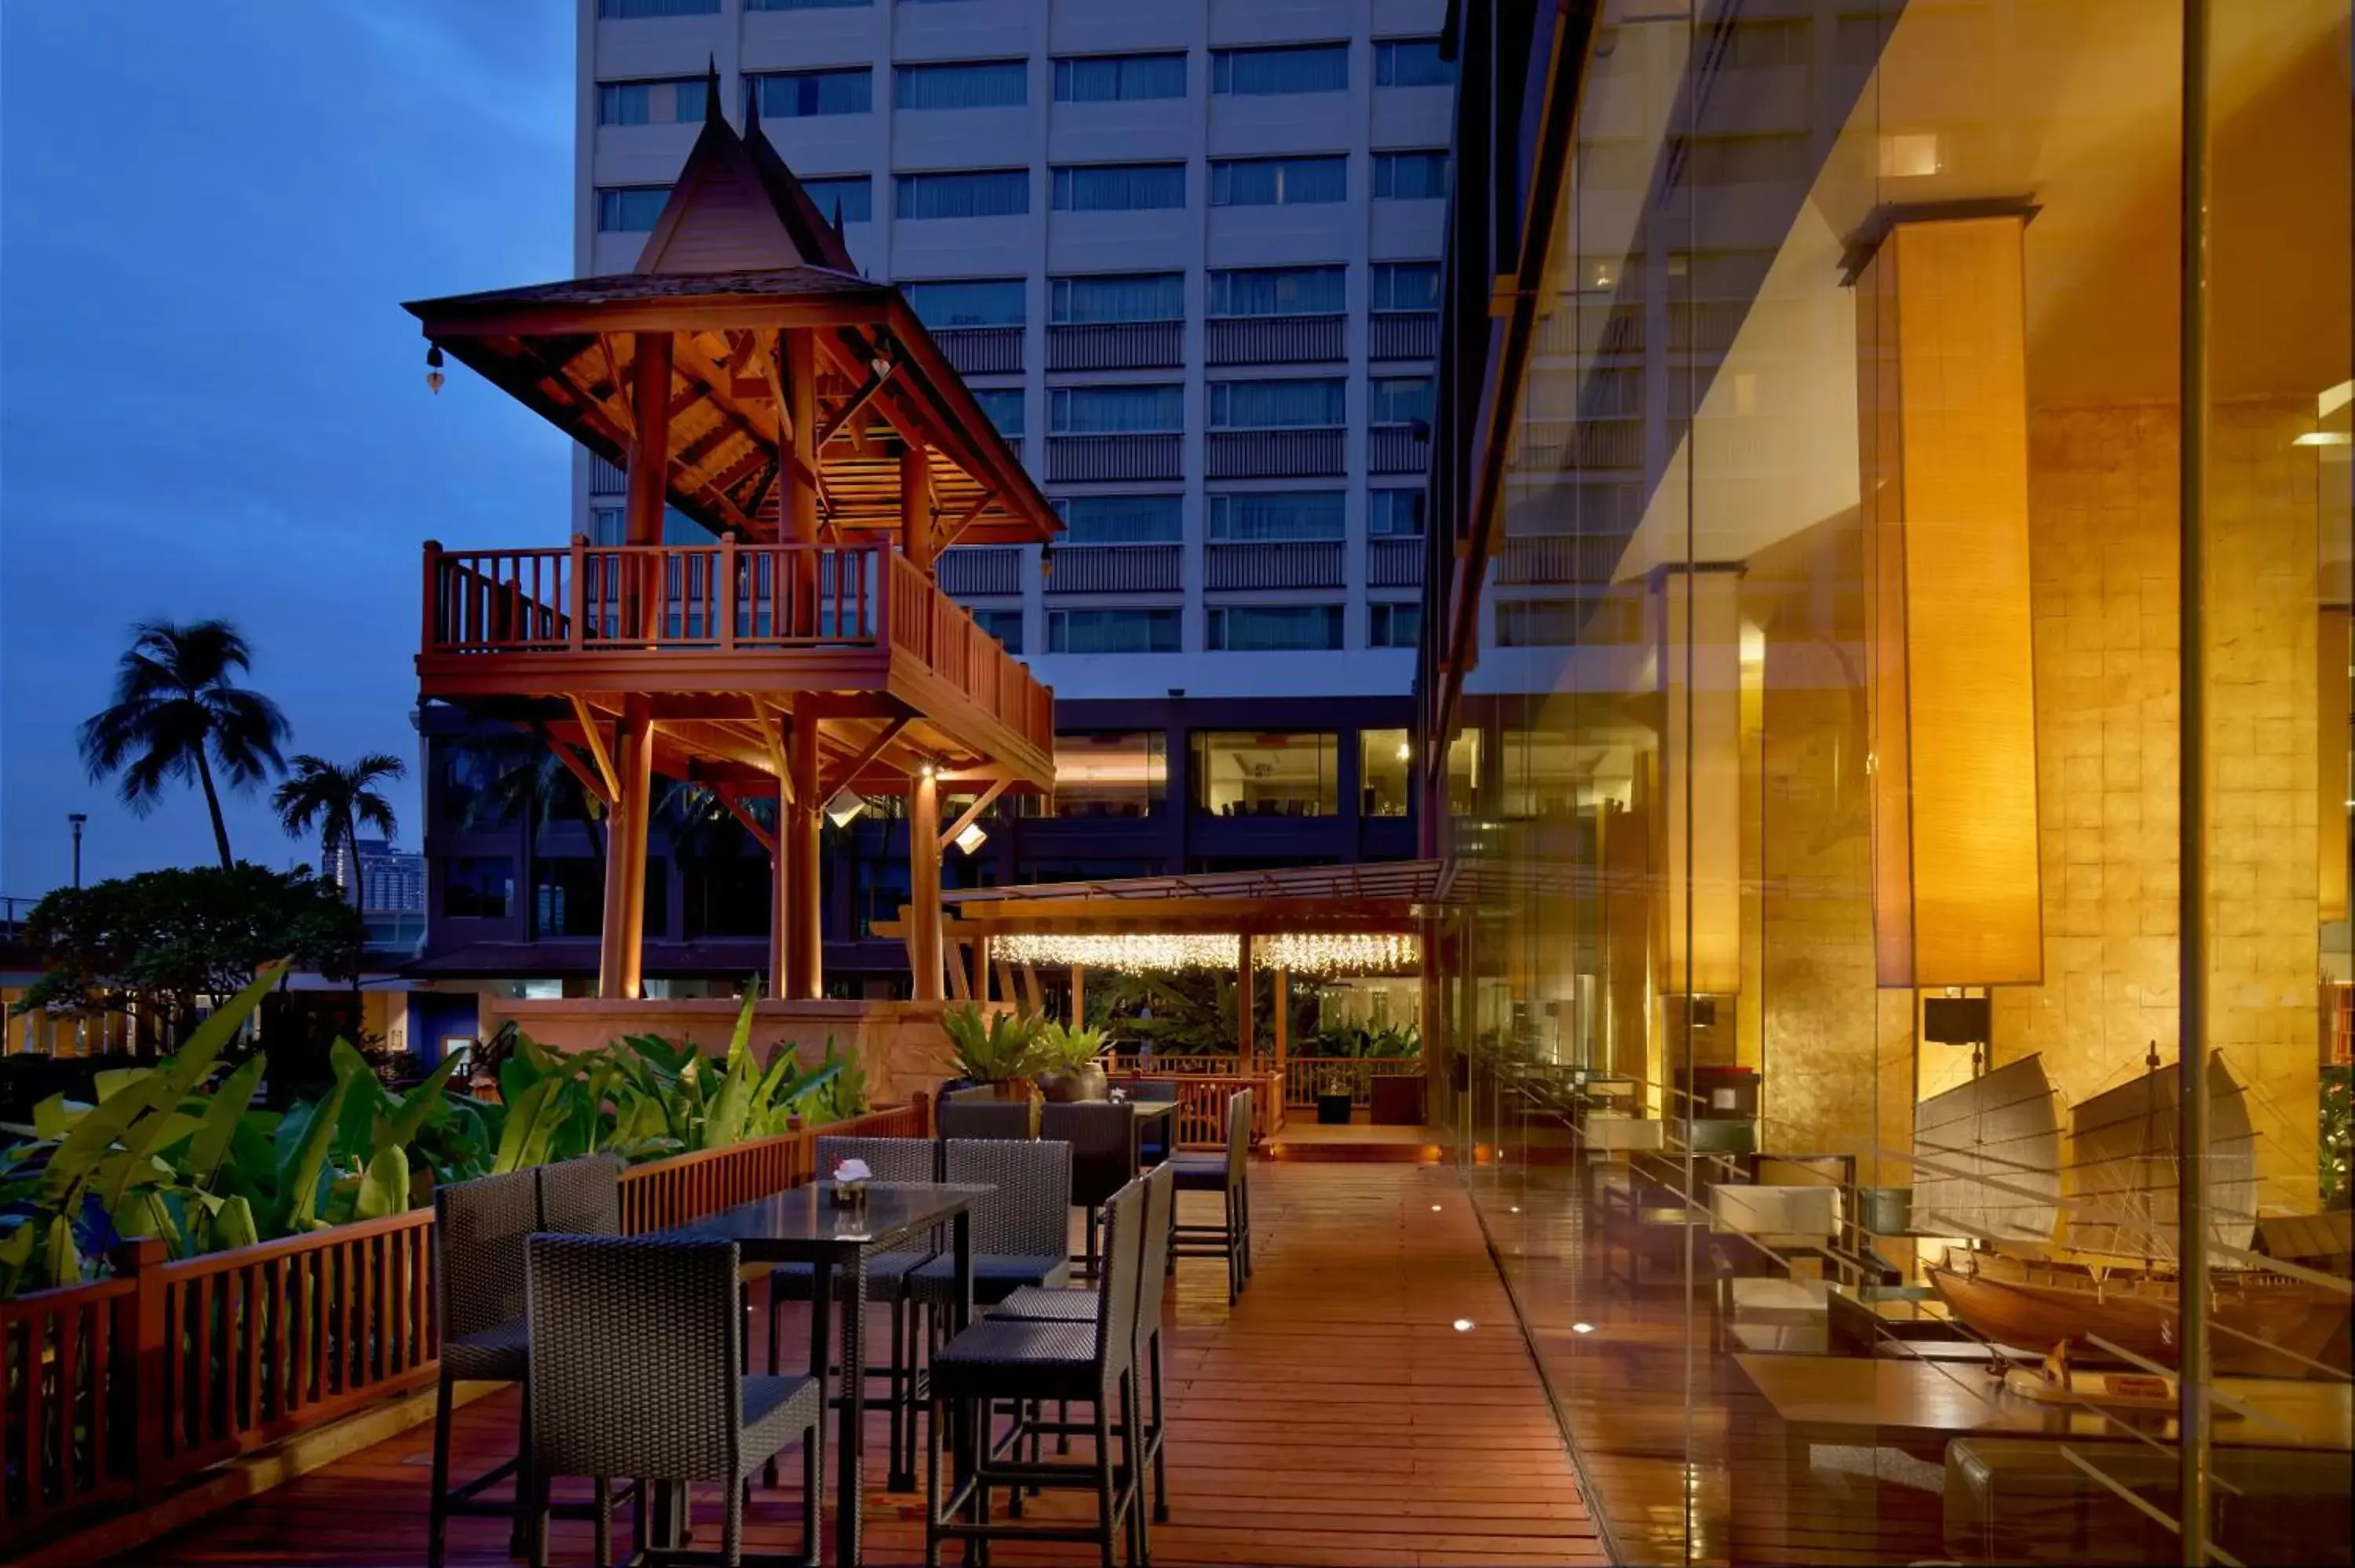 Lounge or bar, Restaurant/Places to Eat in Ramada Plaza by Wyndham Bangkok Menam Riverside